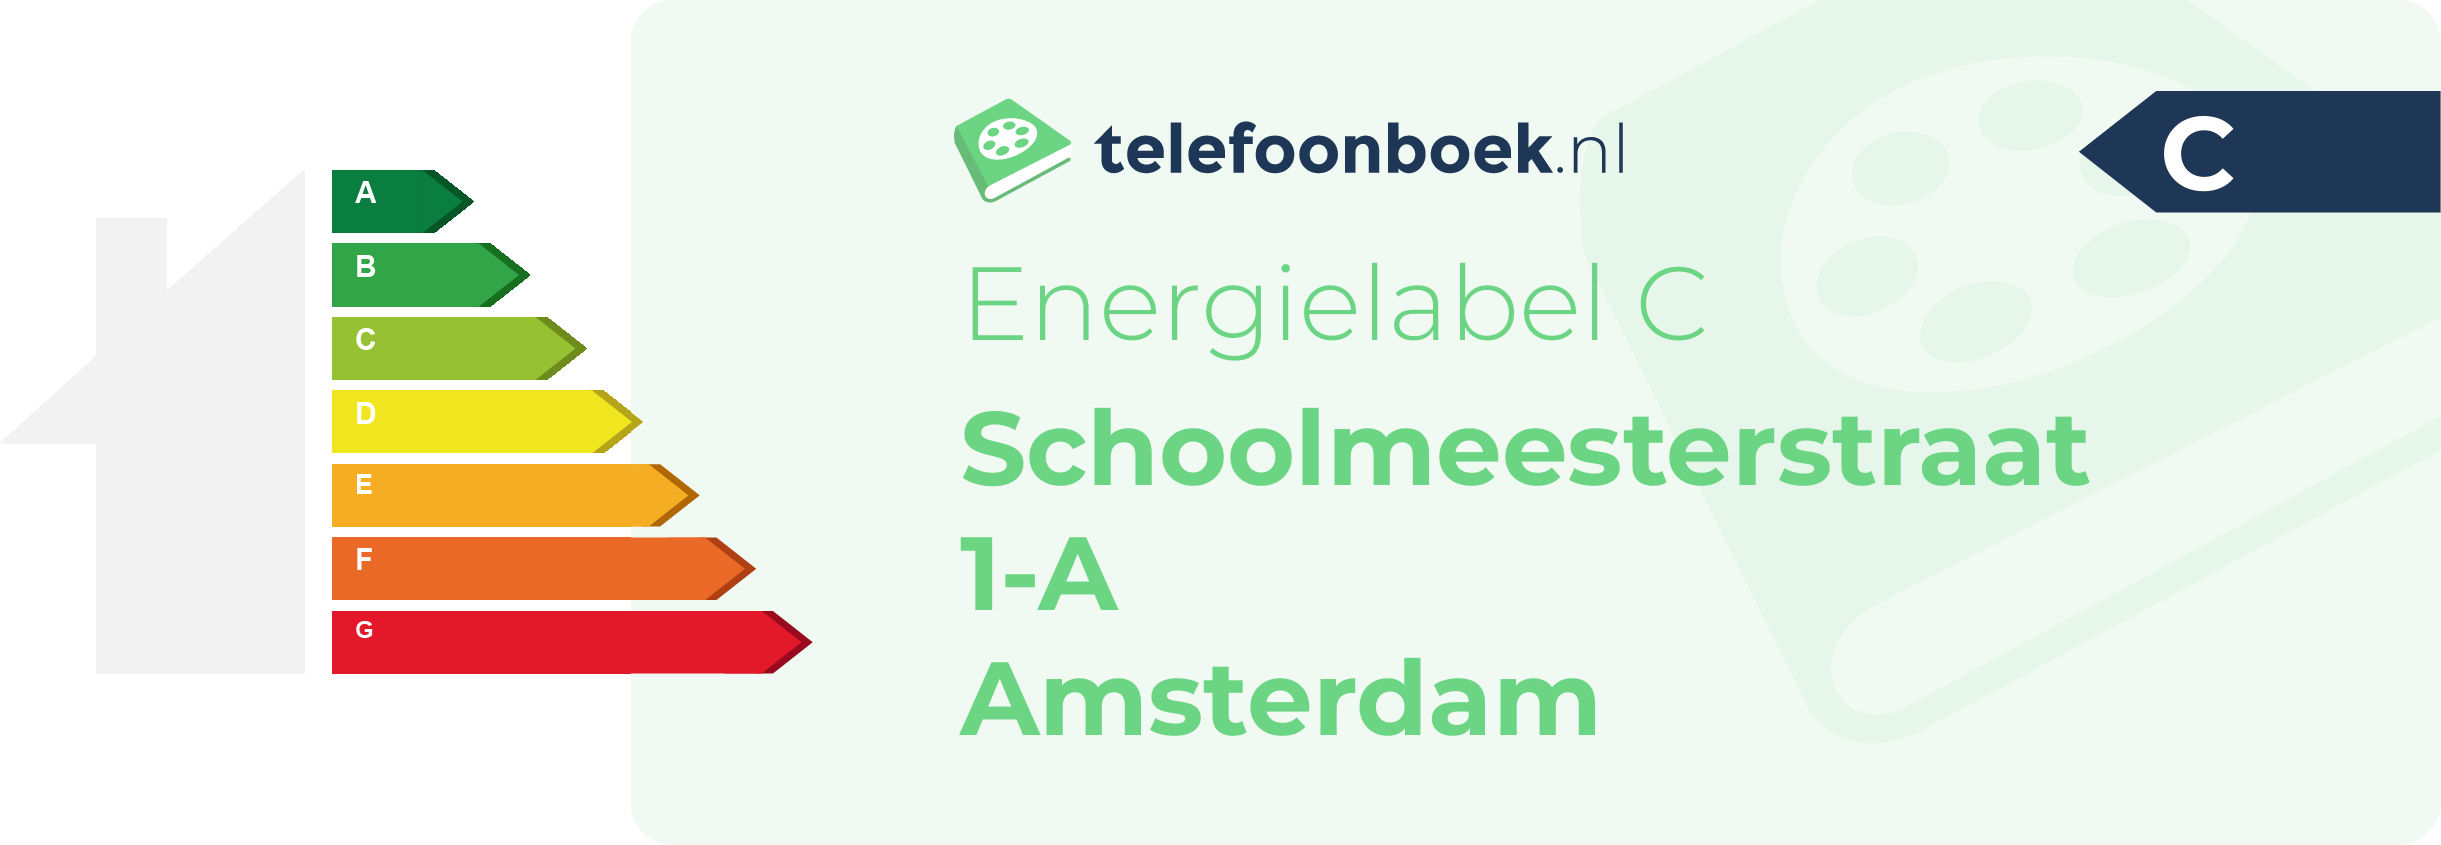 Energielabel Schoolmeesterstraat 1-A Amsterdam